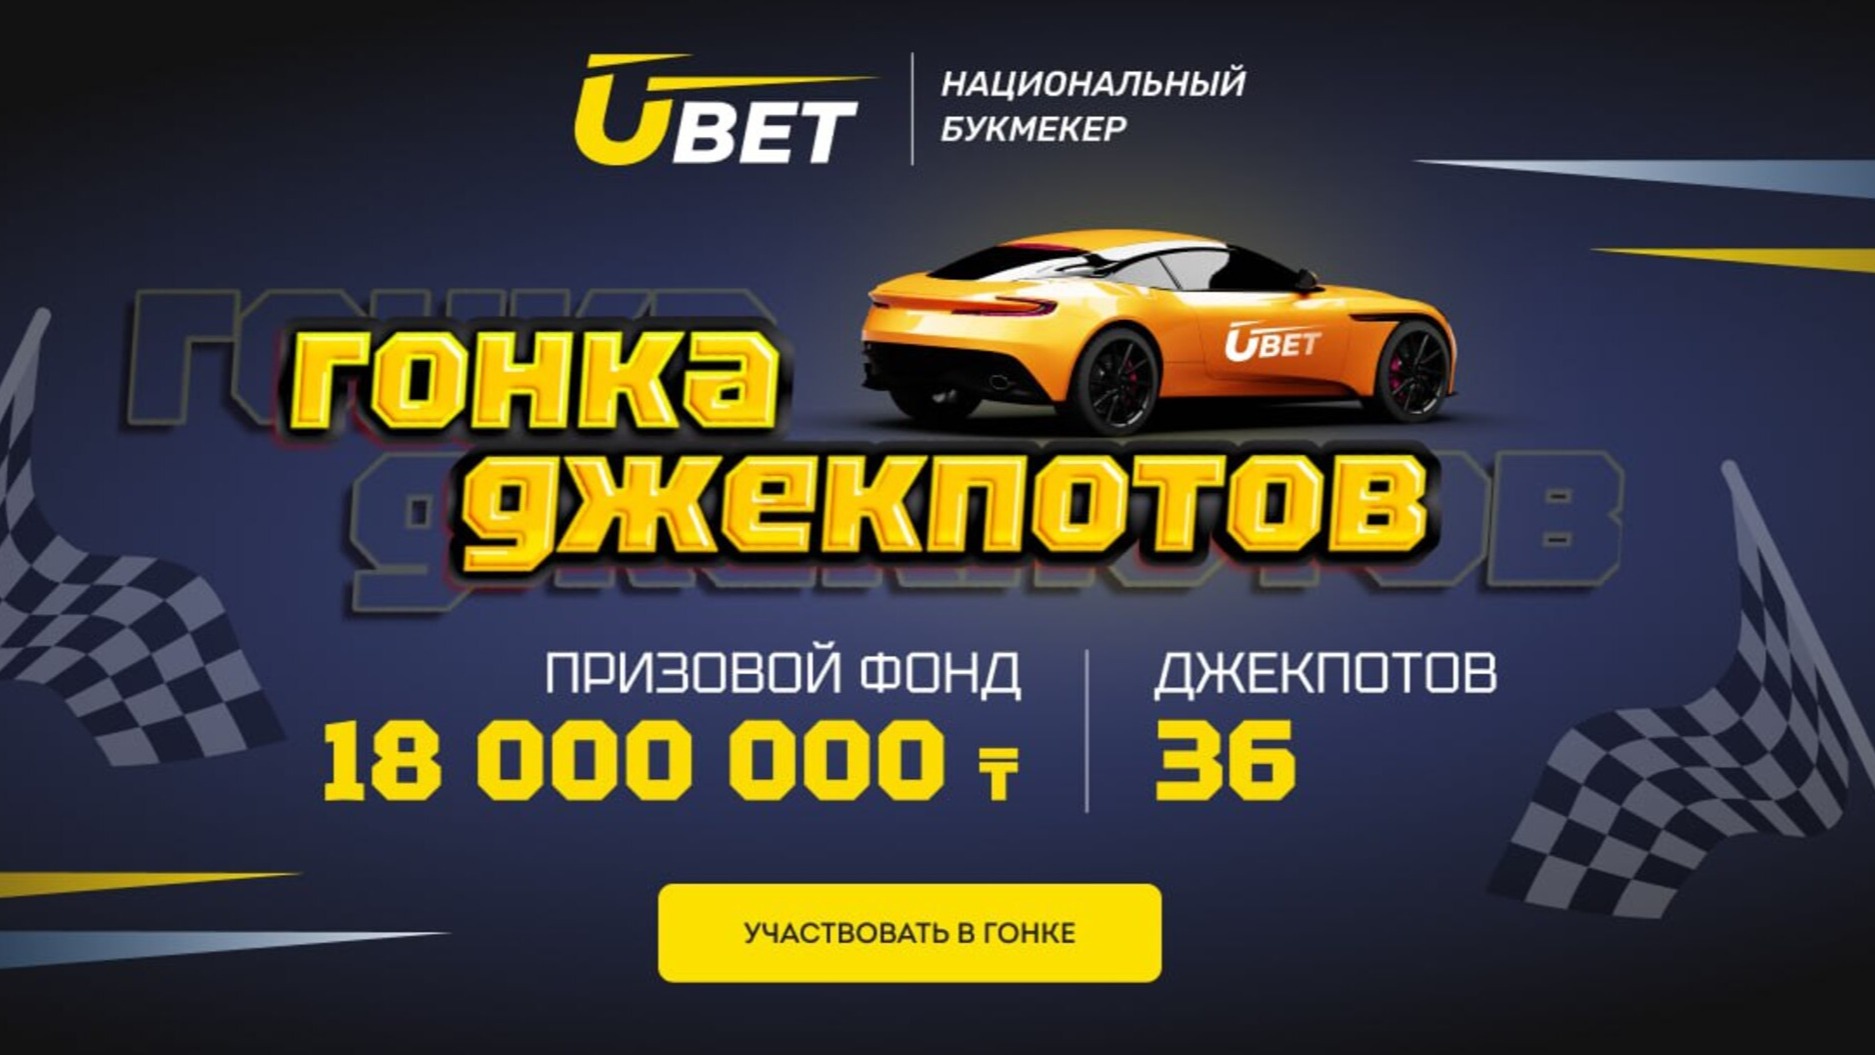 Ubet объявляет «Гонку Джекпотов» с призовым фондом в 18 млн тенге